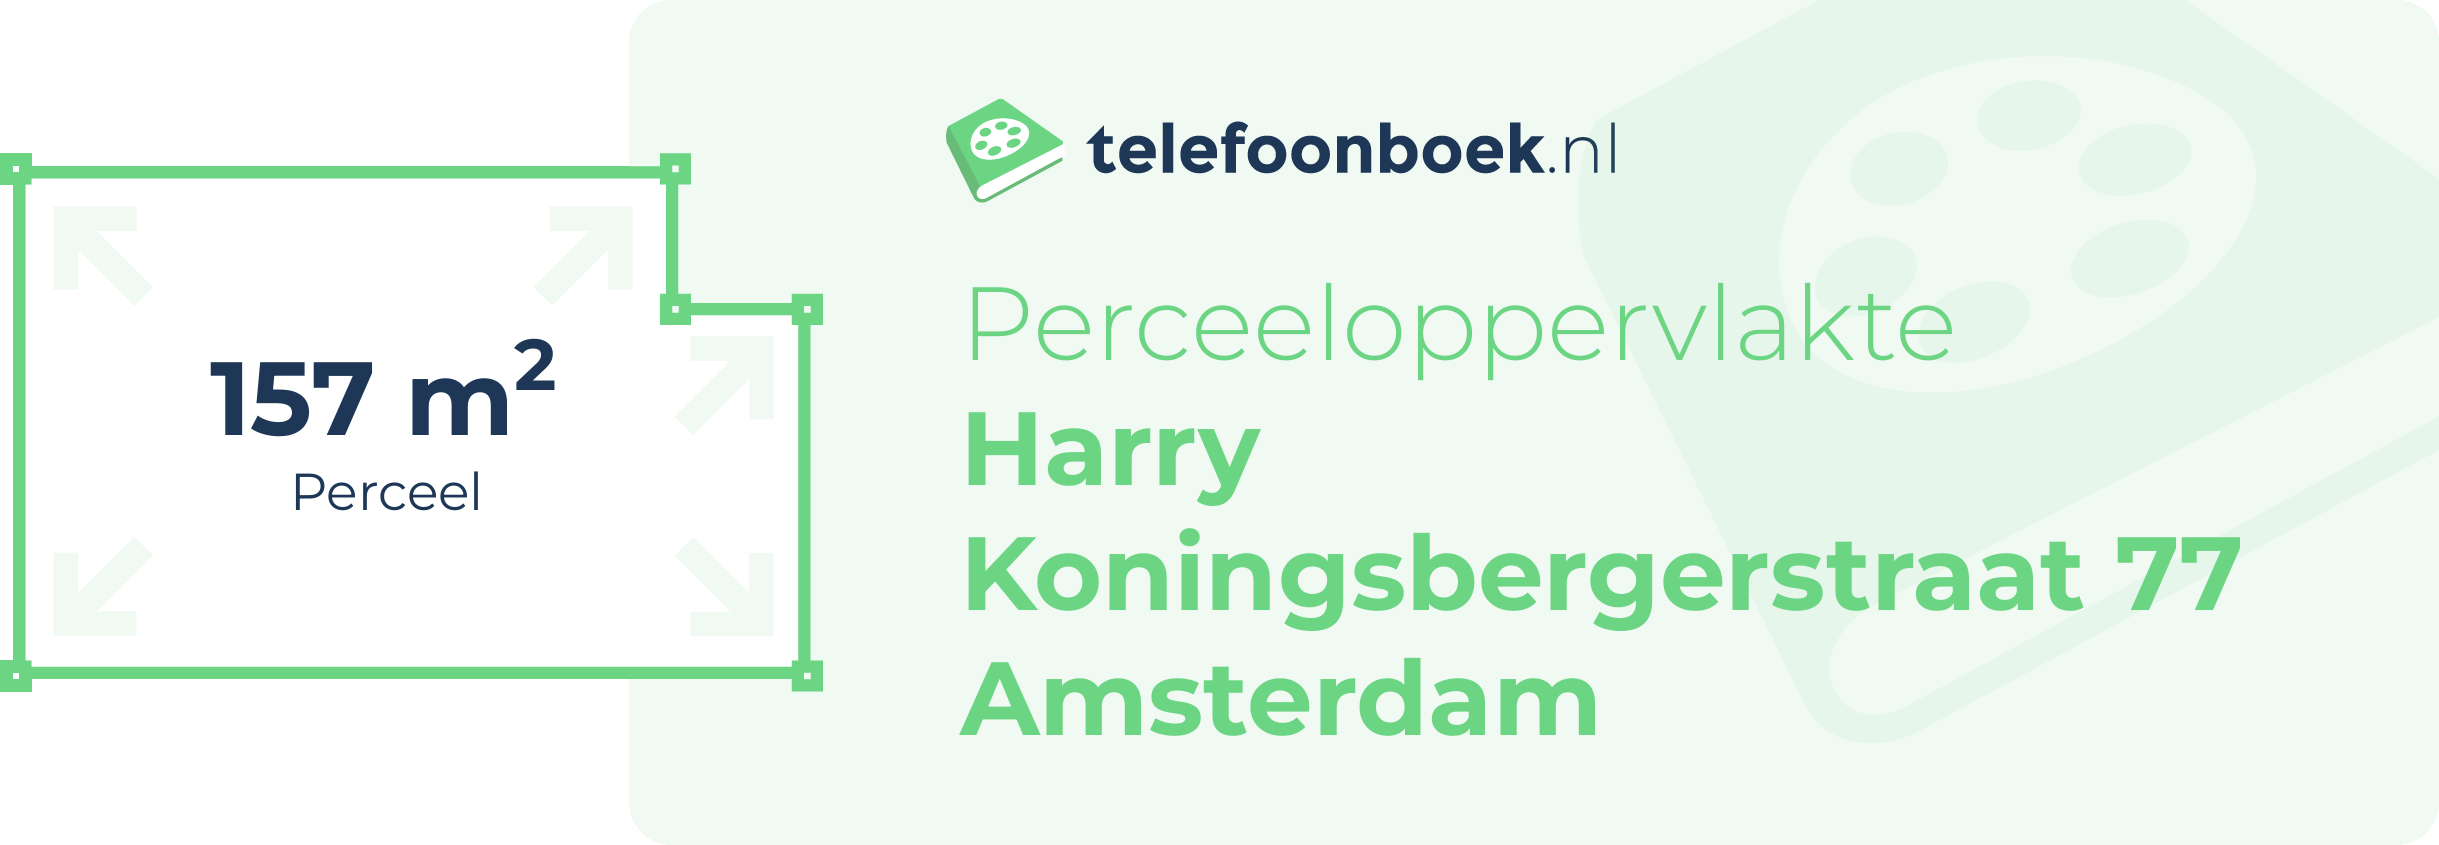 Perceeloppervlakte Harry Koningsbergerstraat 77 Amsterdam